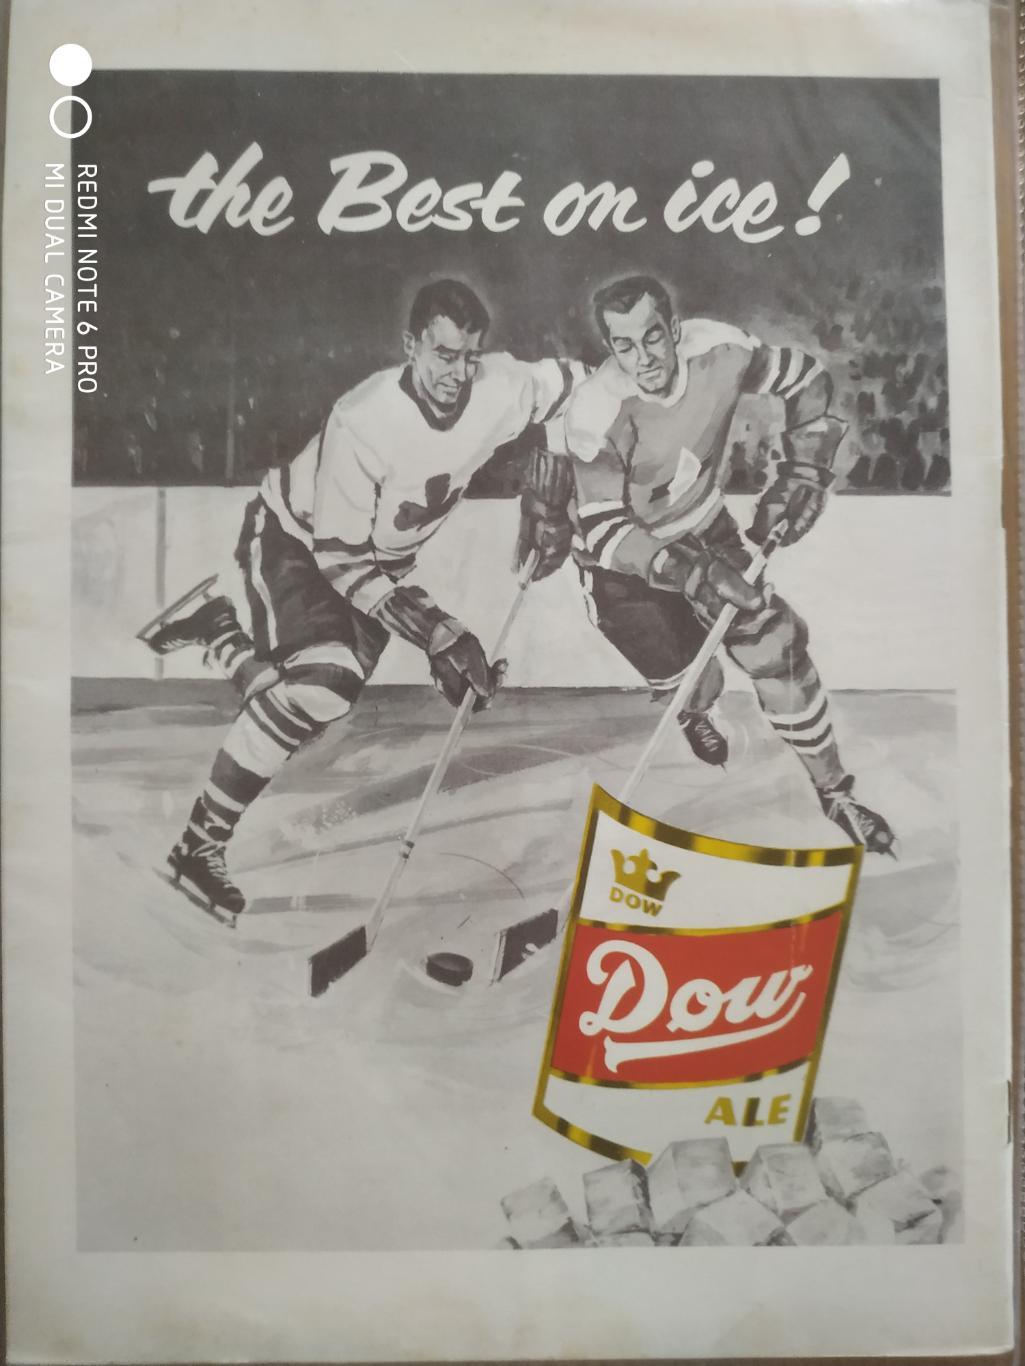 ЖУРНАЛ ЕЖЕМЕСЯЧНИК НХЛ NHL 1956 NOVEMBER THE HOCKEY MONTHLY BLUELINE 1